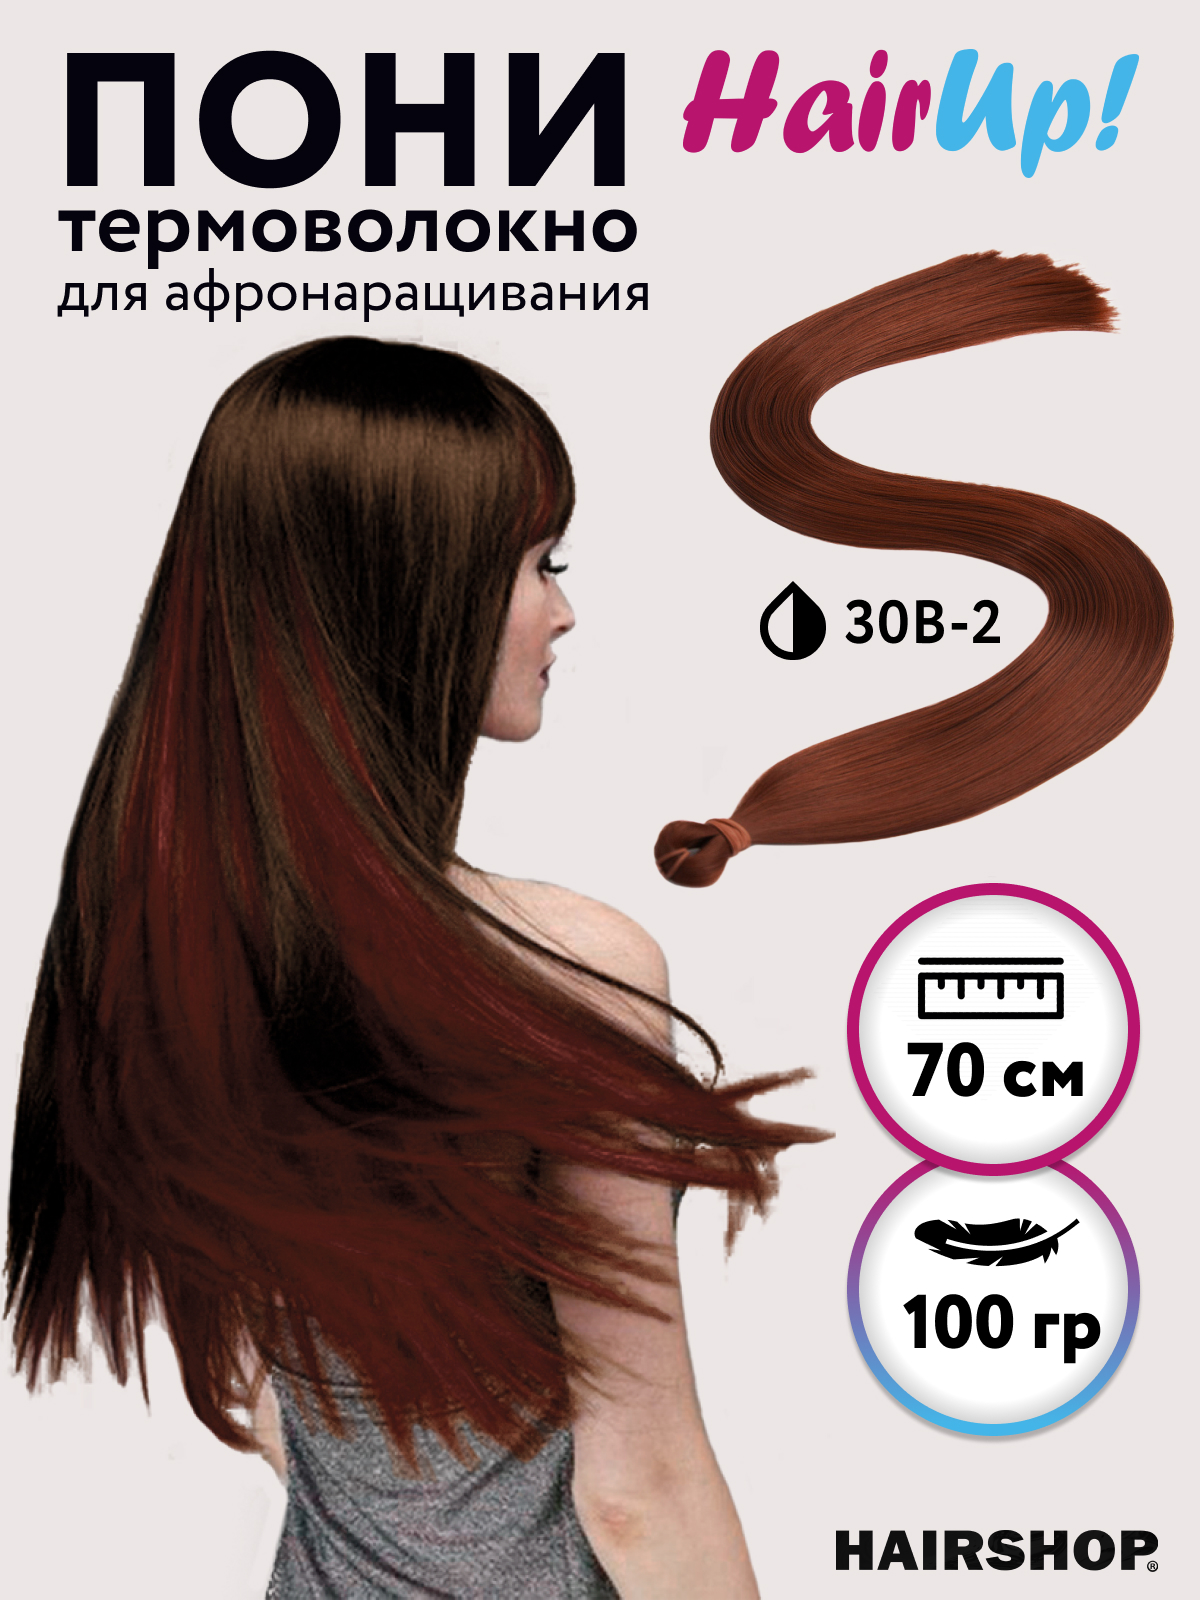 Канекалон Hairshop Пони HairUp для точечного афронаращивания прямые 30B-2 1,4м 100г канекалон hairshop пони hairup для точечного афронаращивания о1 персик пастельный 1 4м